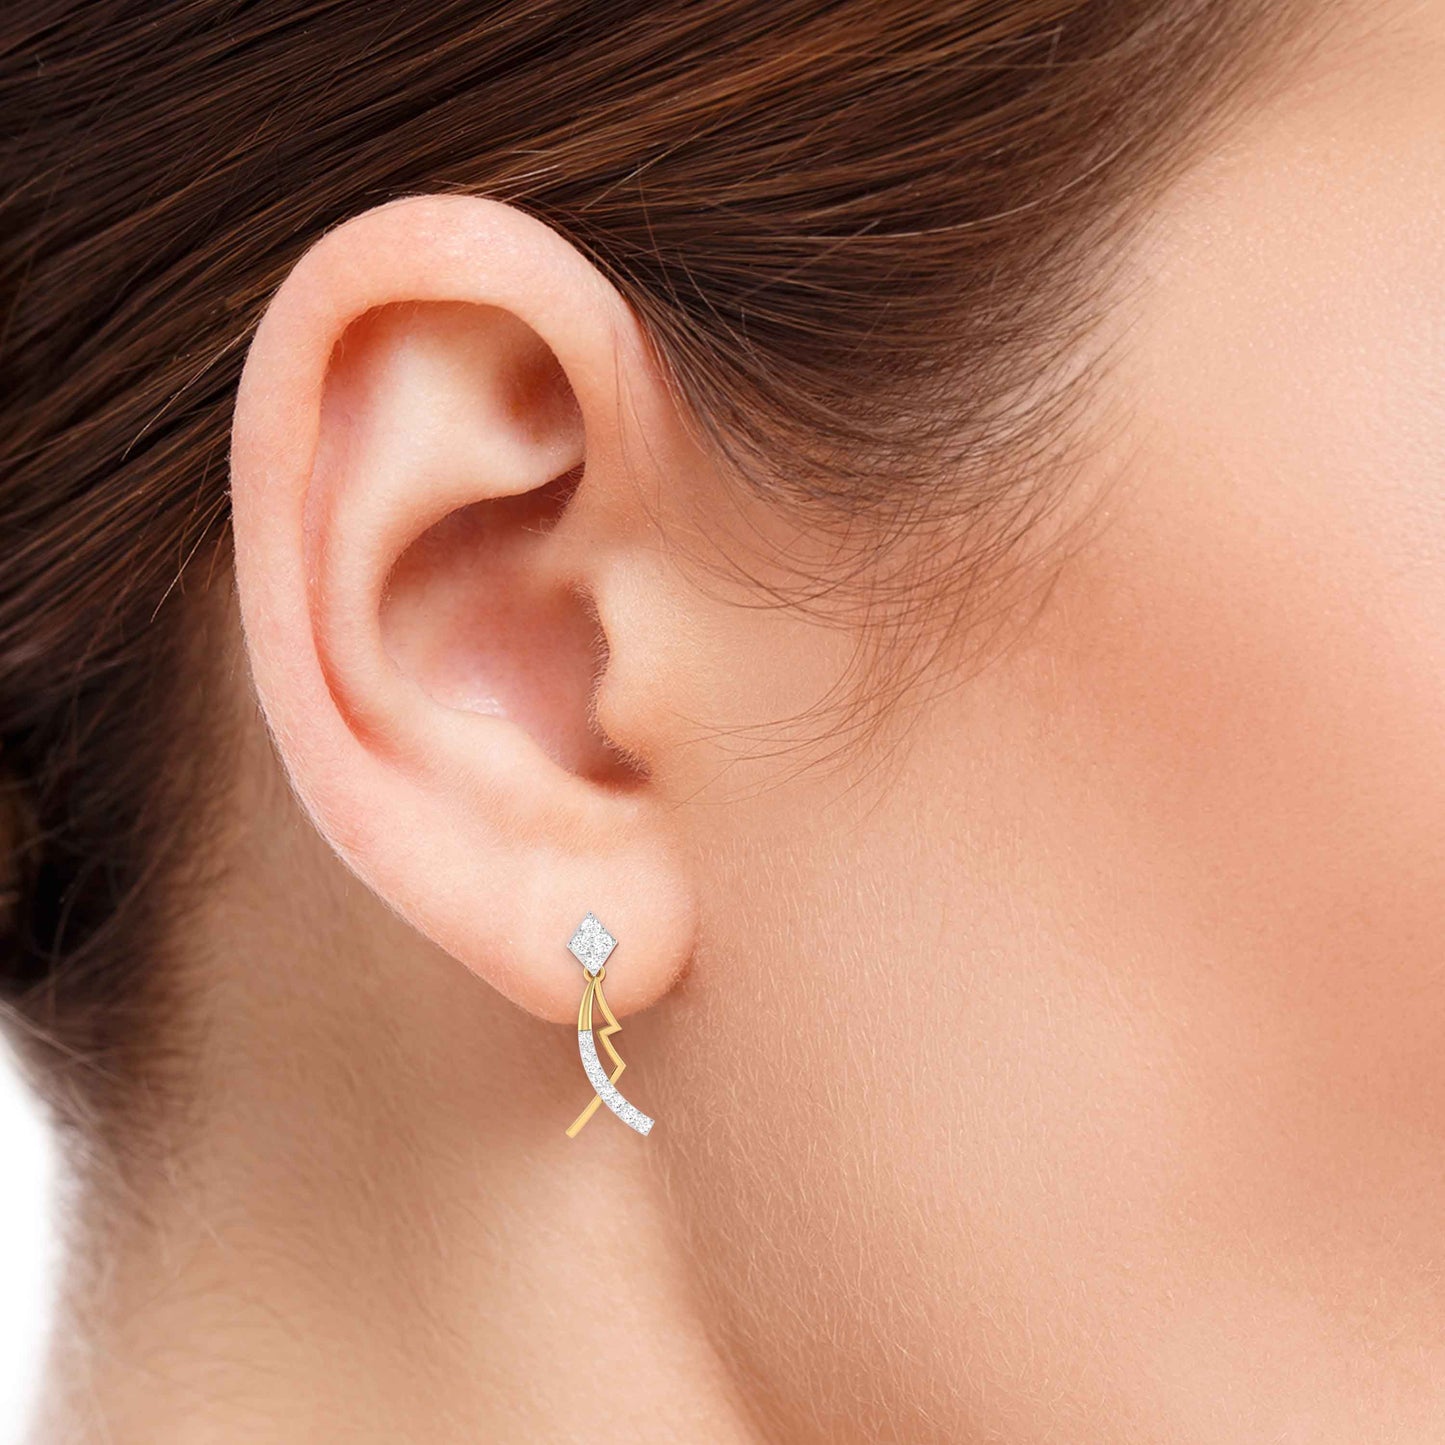 Party wear earrings design Susan Lab Grown Diamond Earrings Fiona Diamonds